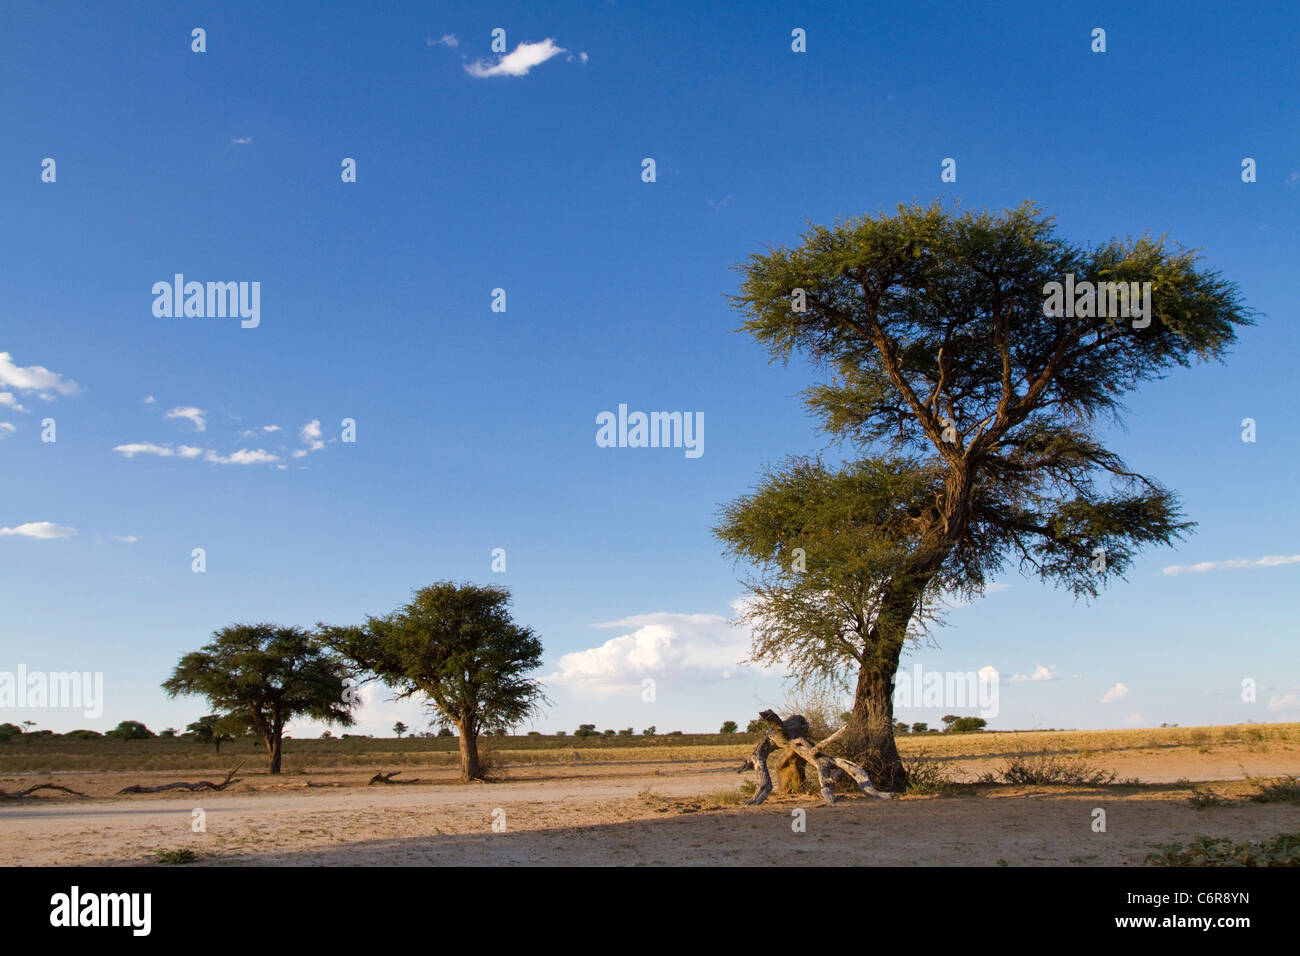 Paysage avec arbres Camelthorn Kalahari (Acacia erioloba) Banque D'Images